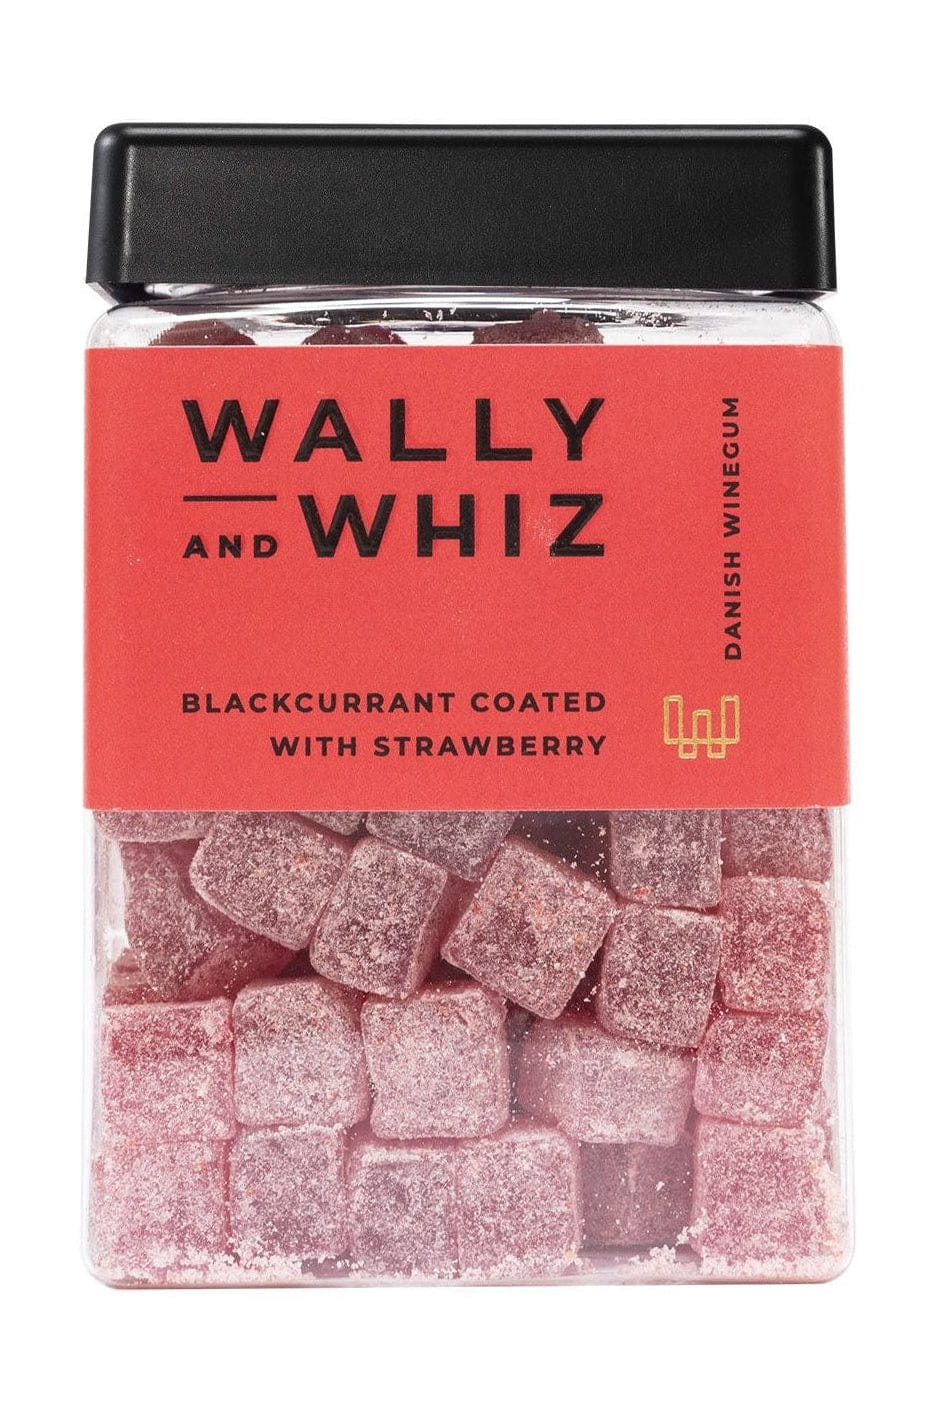 Kostka gumowa Wally i Whiz Wine, czarna porzeczka z truskawką, 240G